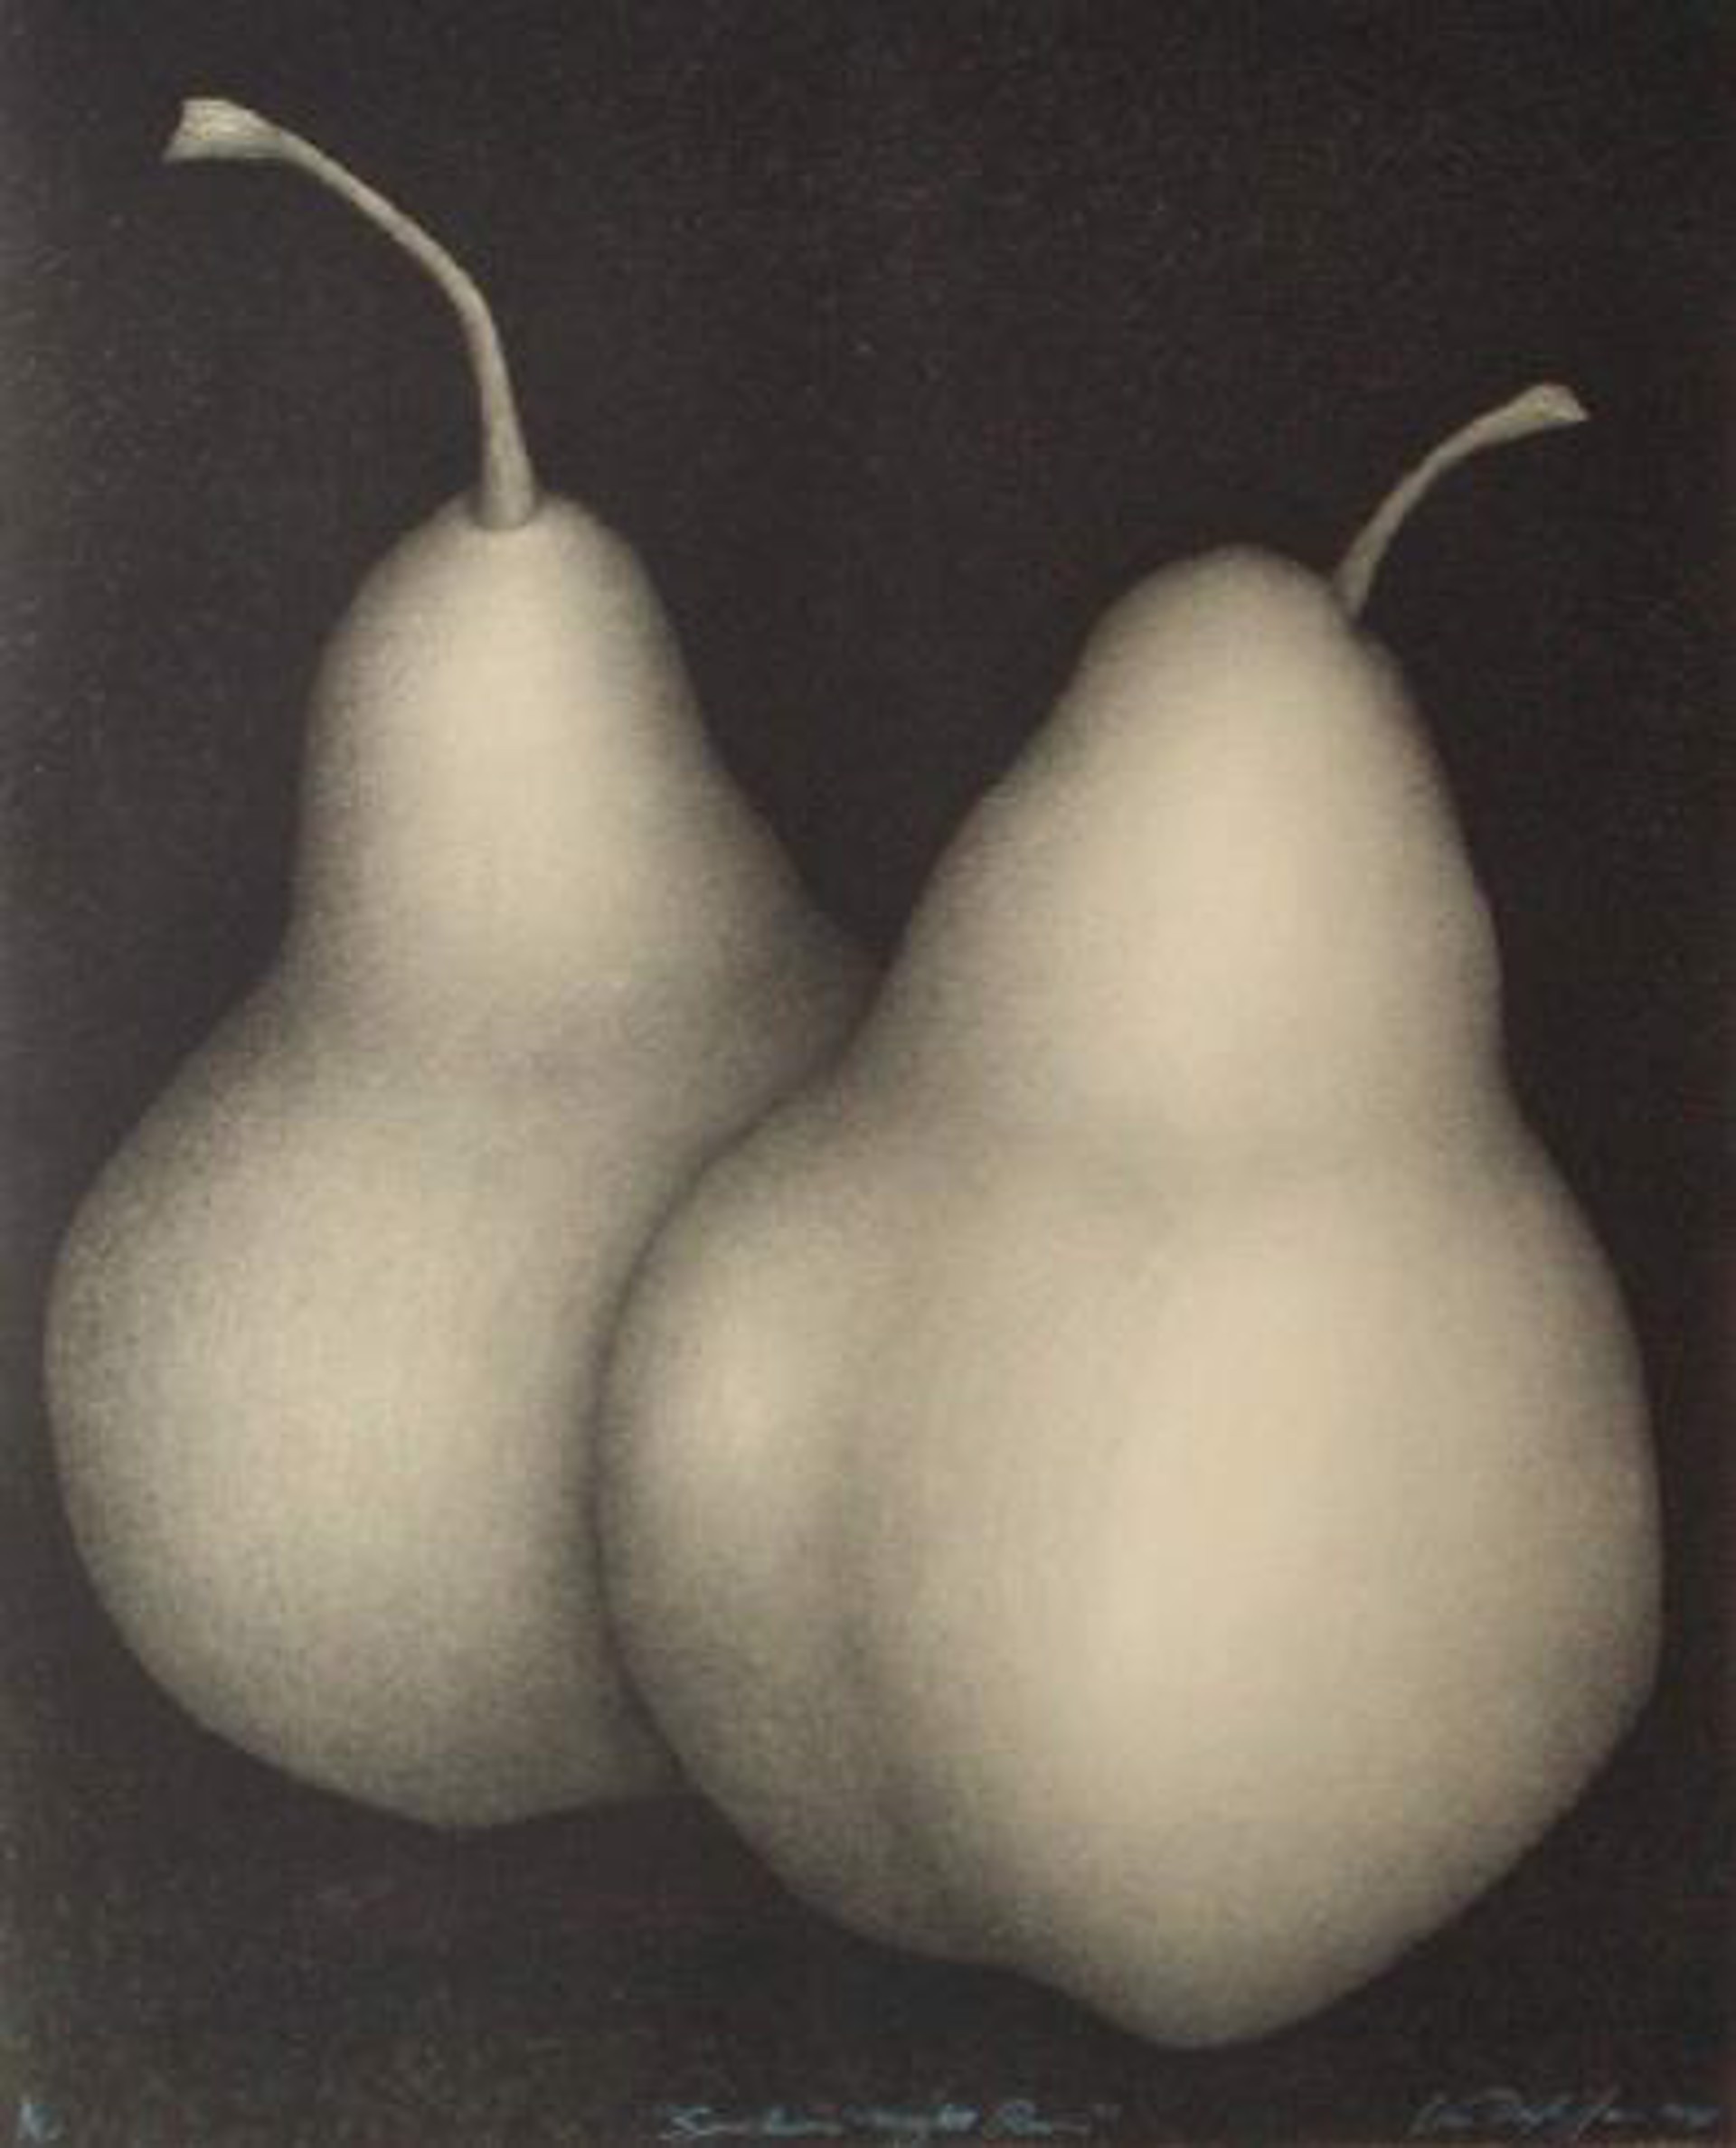 Sinclairs Night Pears by Van Dyke Jones